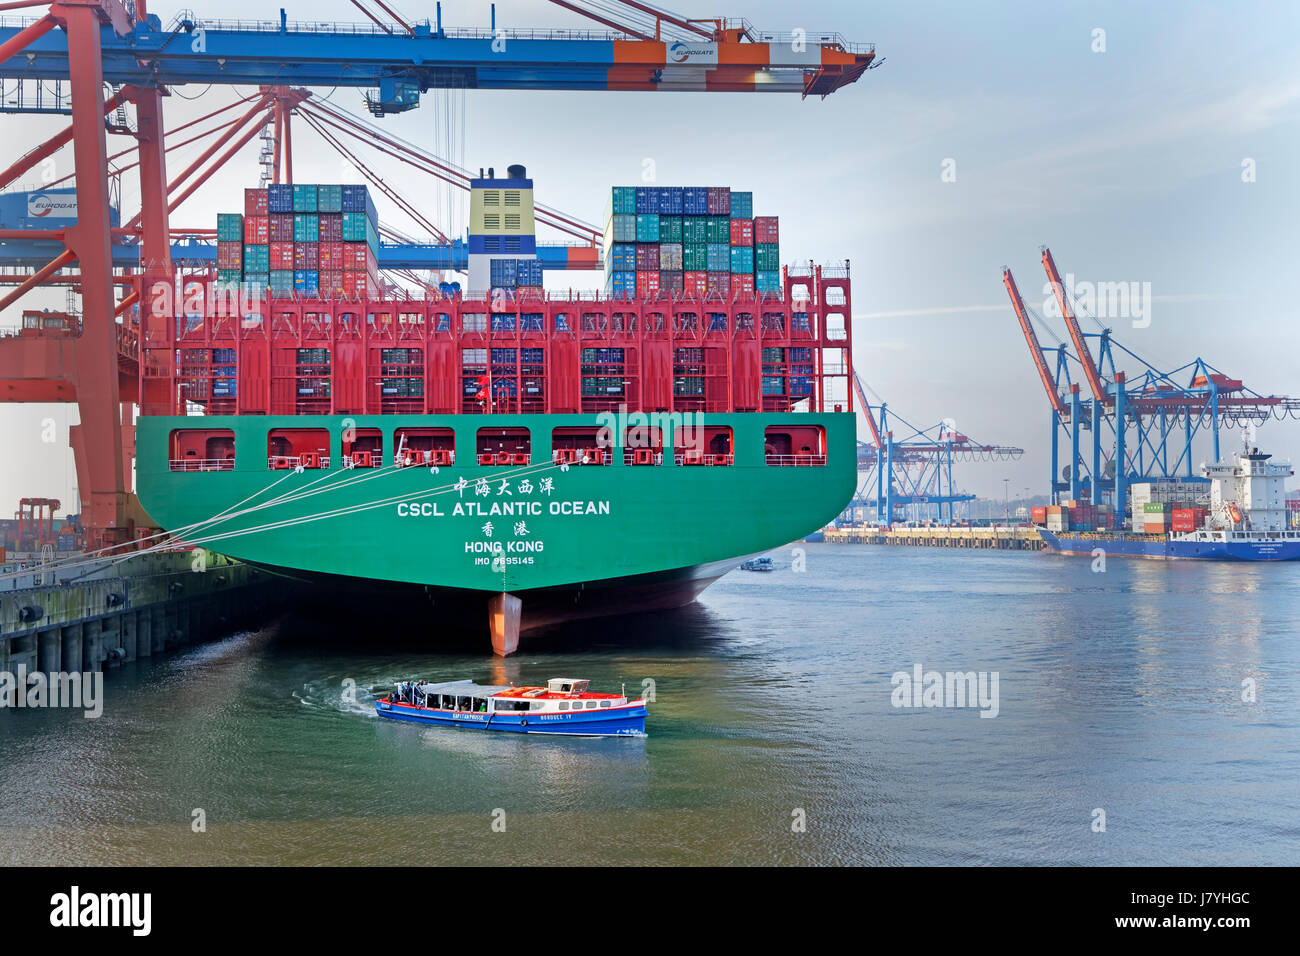 Ein Containerschiff liegt im Hamburger Hafen, Containerterminal Eurogate, Hamburgo, Alemania / barco de contenedores en la terminal de contenedores del puerto de Hamburgo, EUR Foto de stock